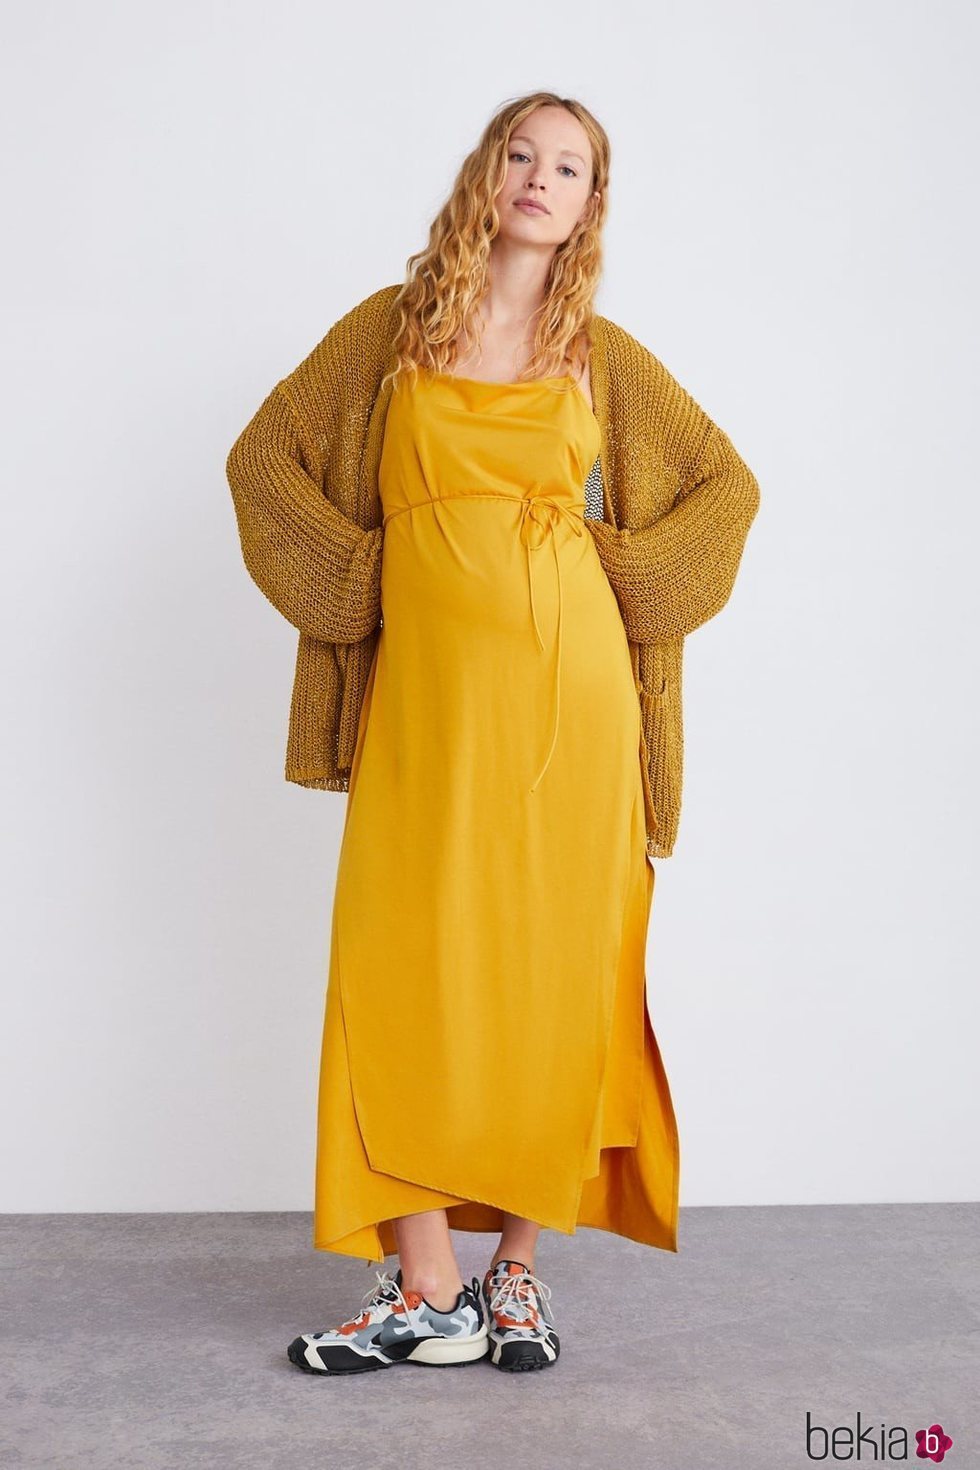 Vestido mostaza de la colección premamá primavera 2019 de Zara